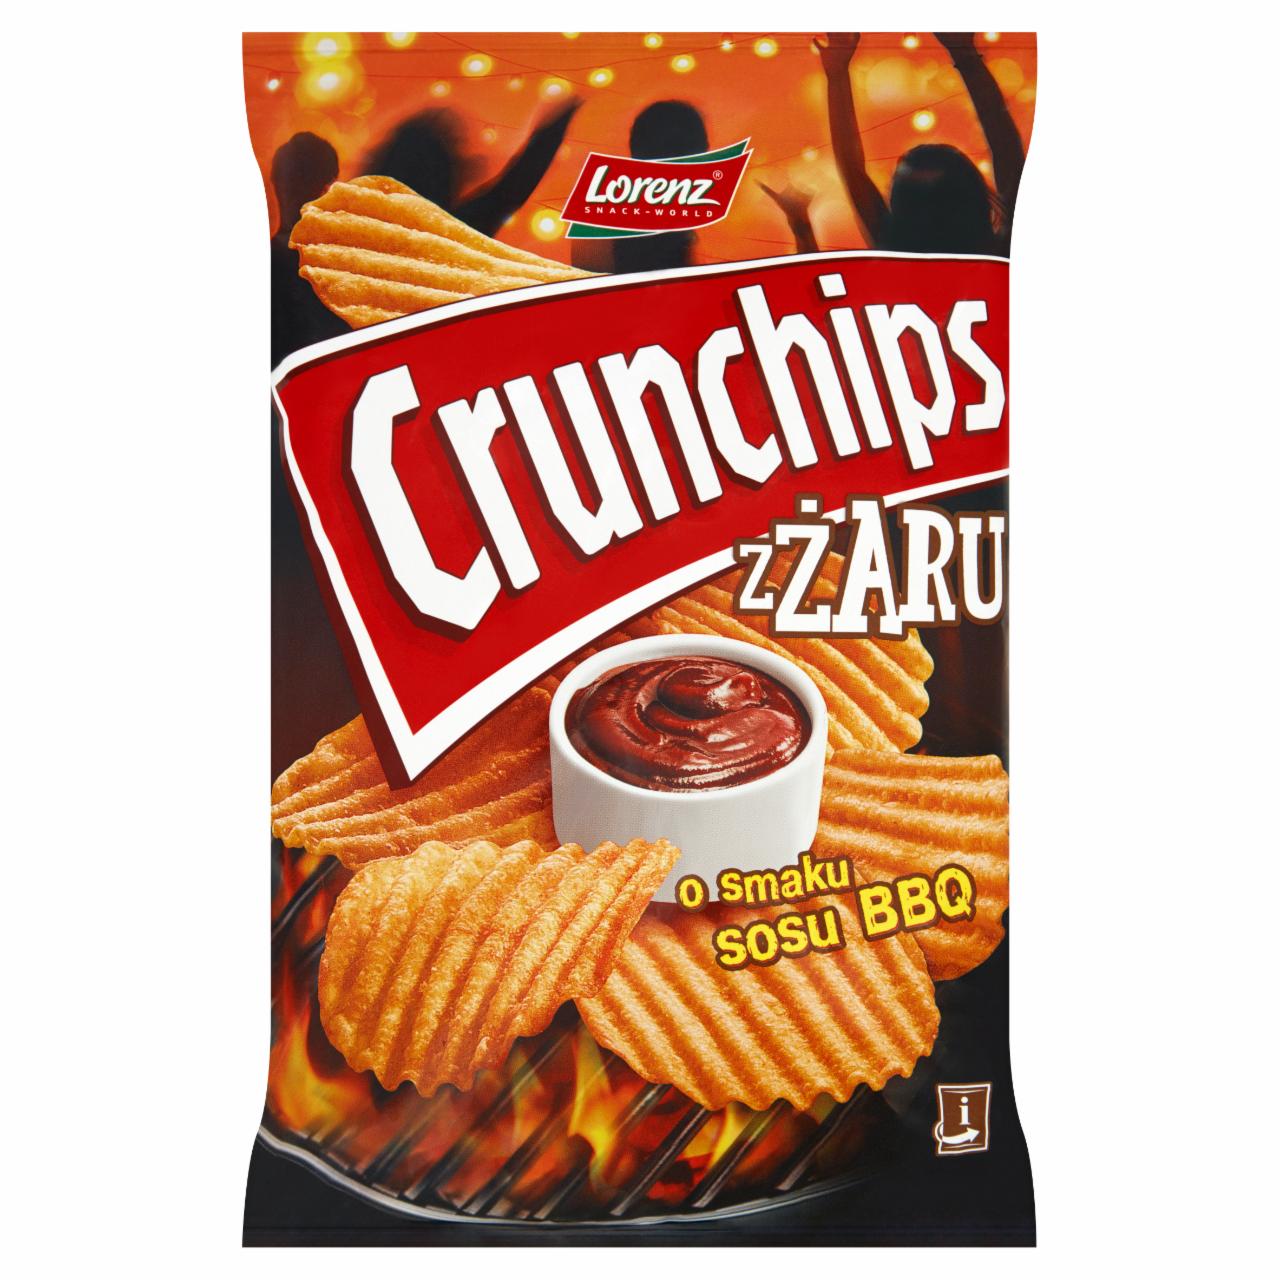 Zdjęcia - Crunchips zŻaru Chipsy ziemniaczane o smaku sosu BBQ 140 g